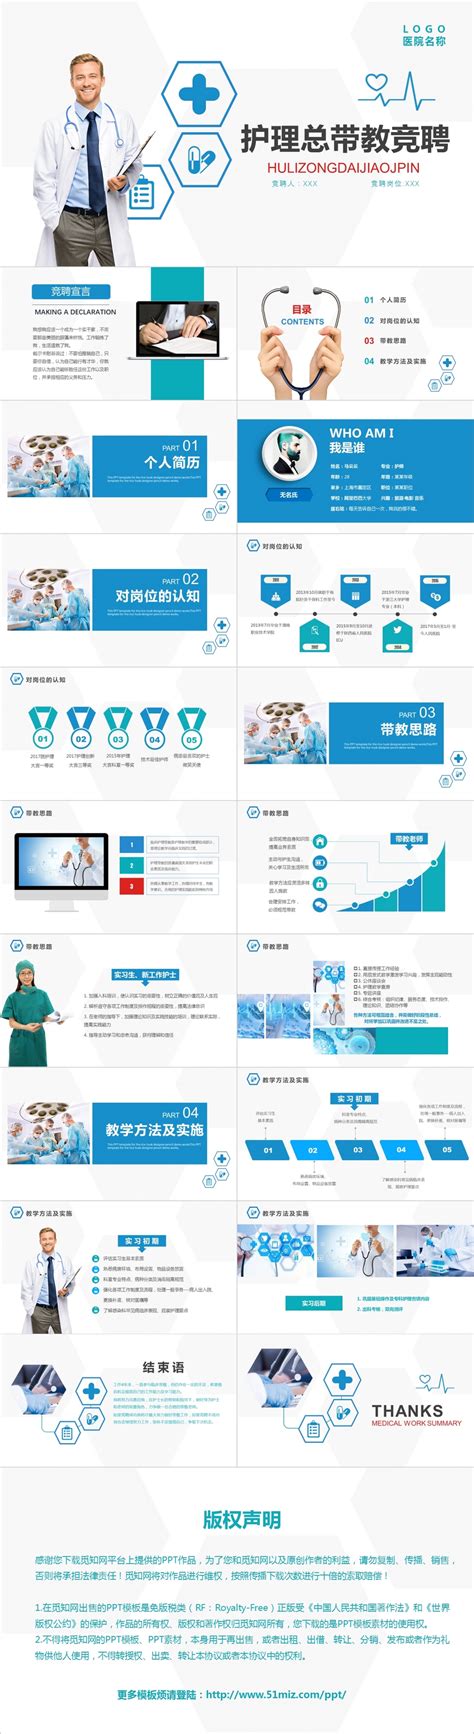 独家招聘-广州市维力医疗器械股份有限公司